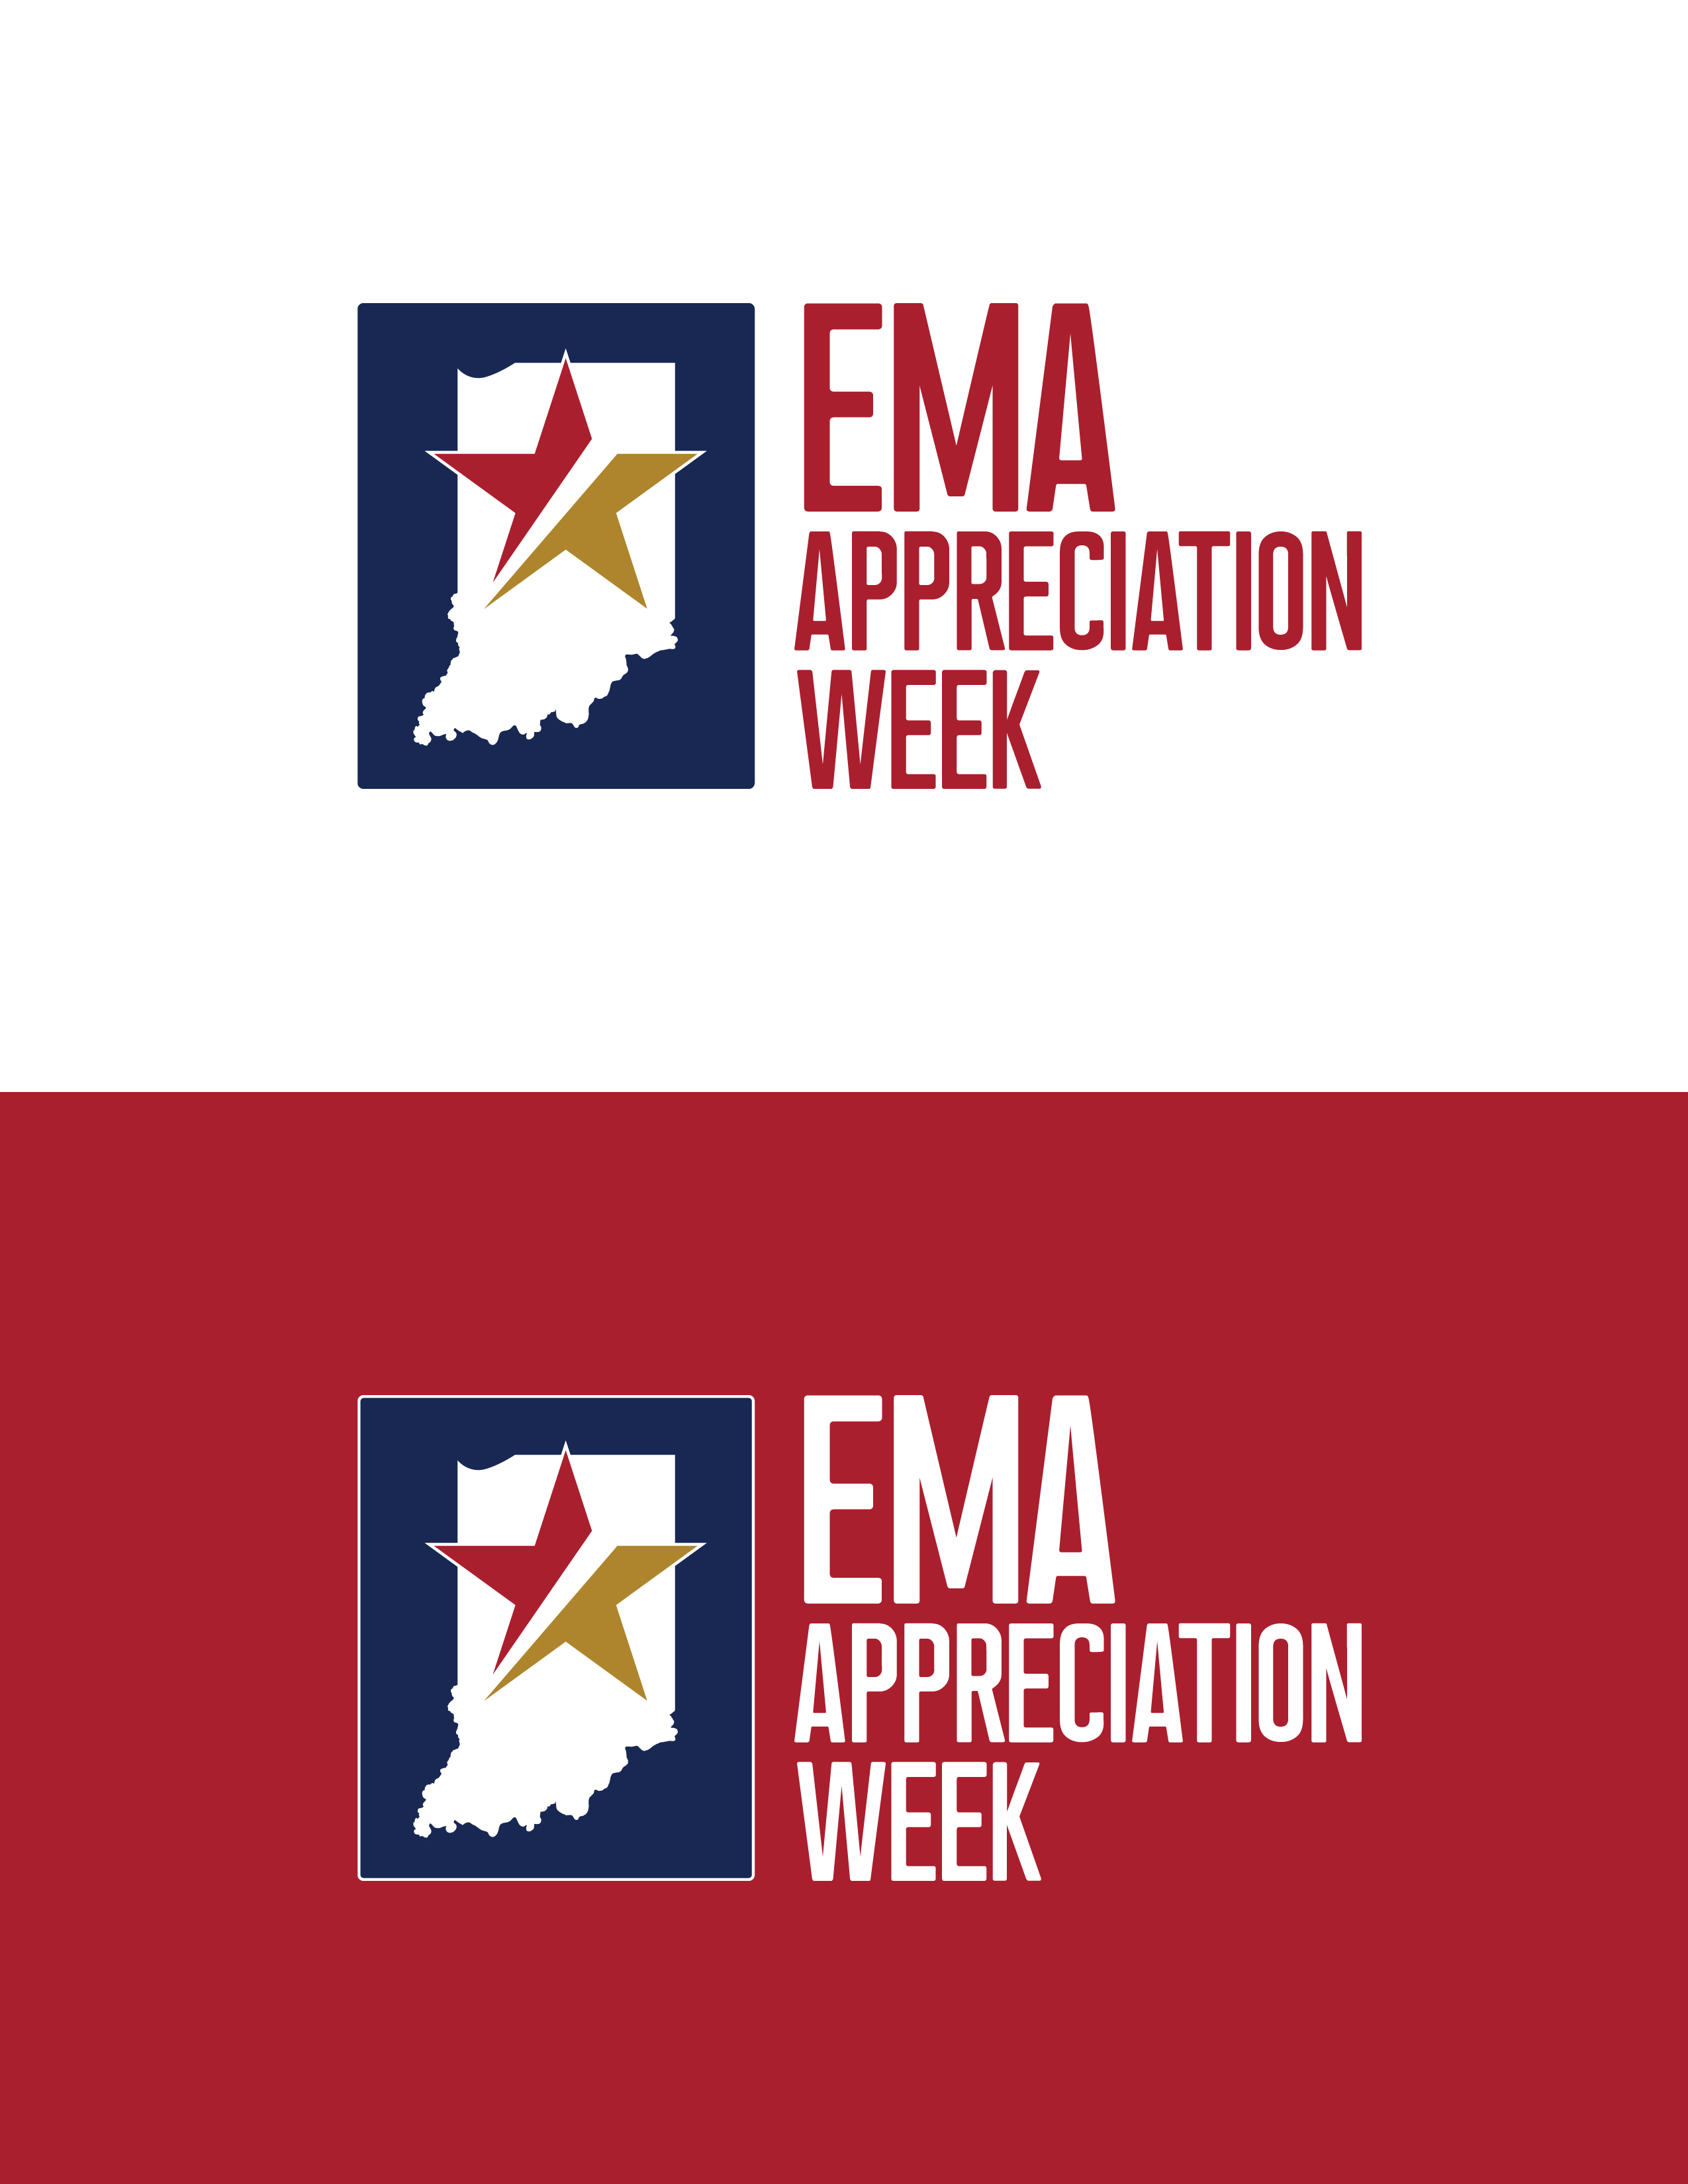 EMA Appreciation Week logos